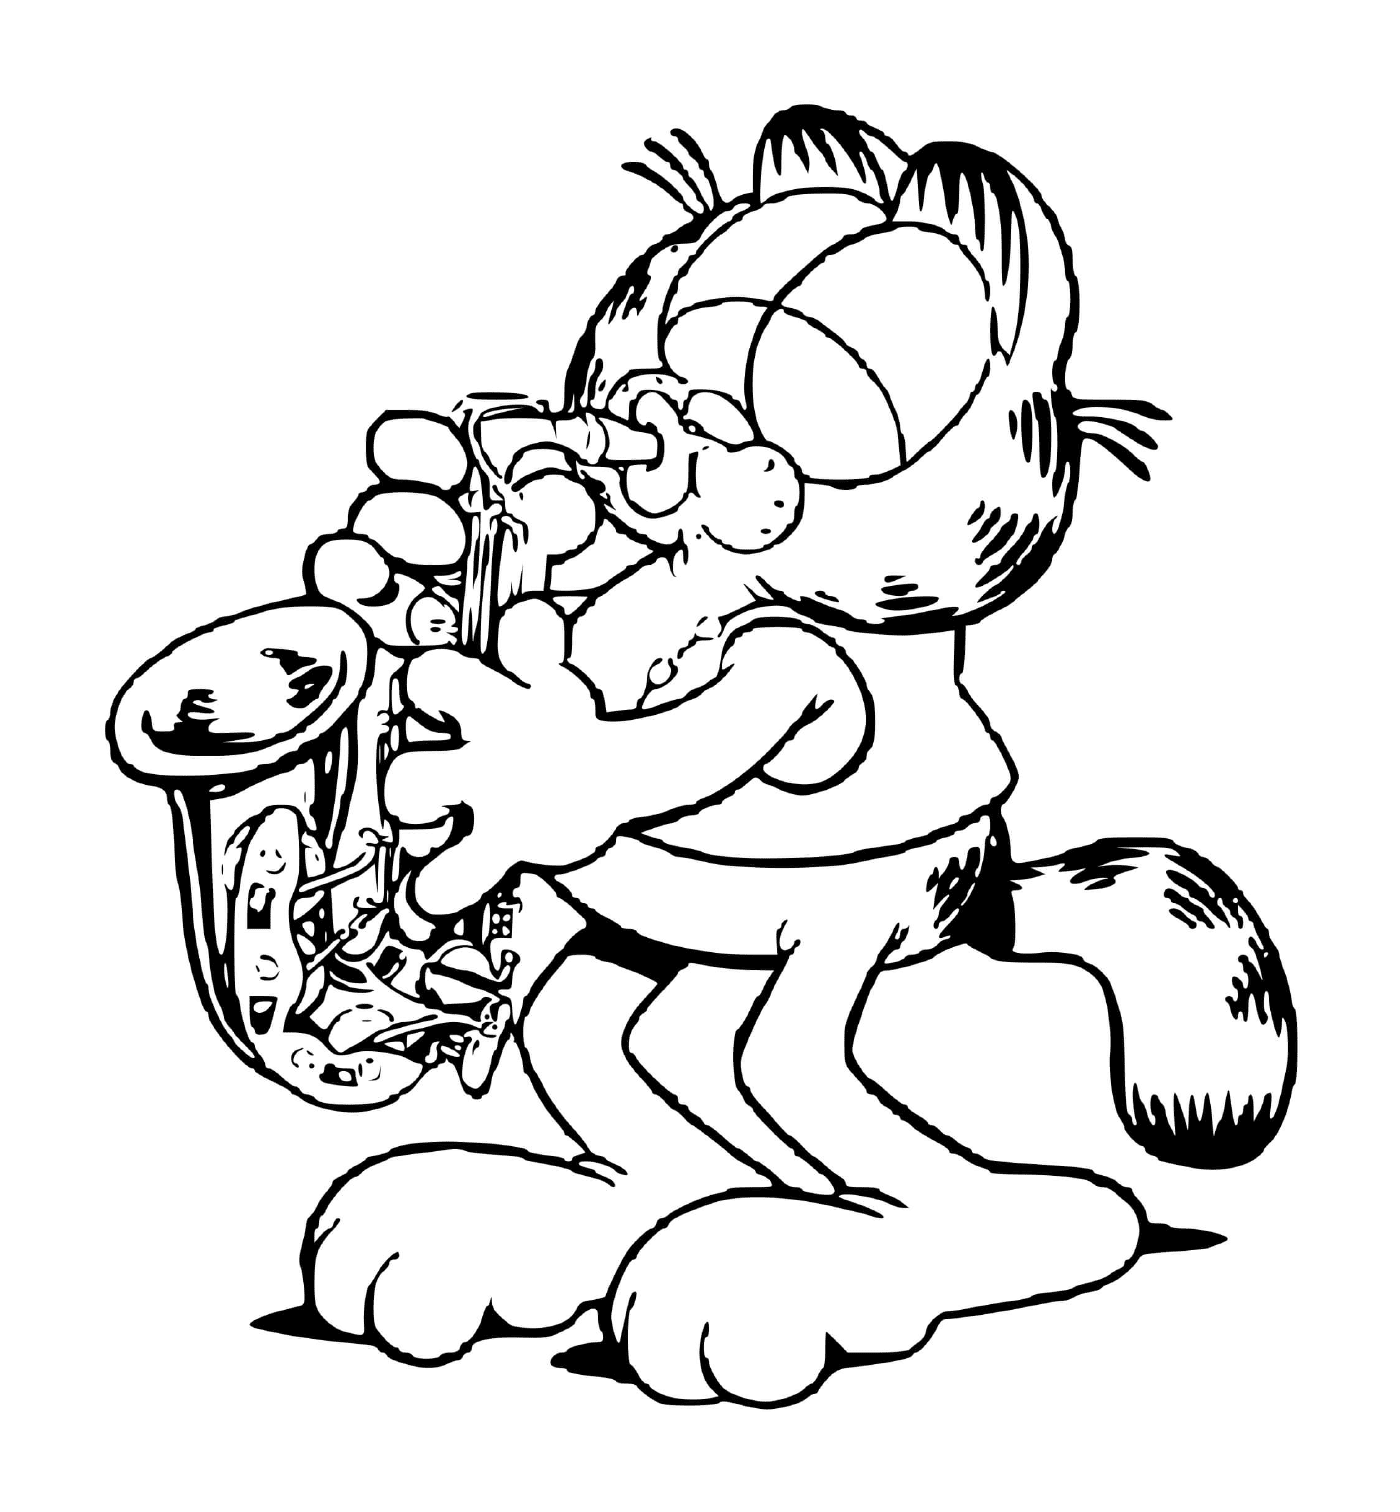  Гарфилд играет на саксофоне 